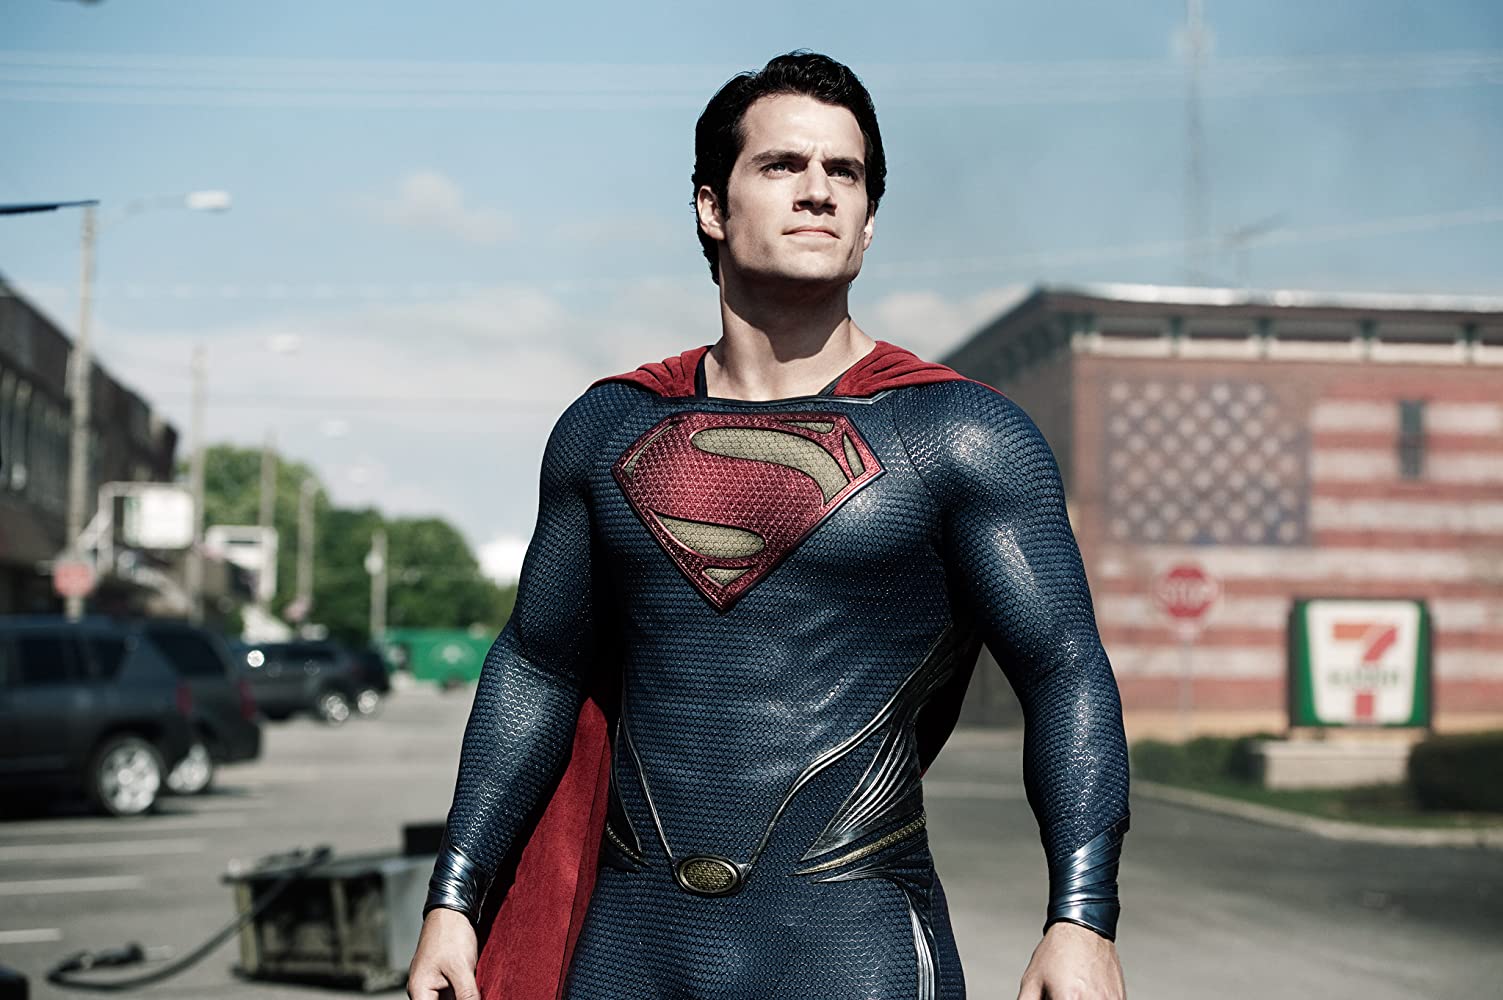 Keert Henry Cavill terug als Superman in aankomende DC-film?